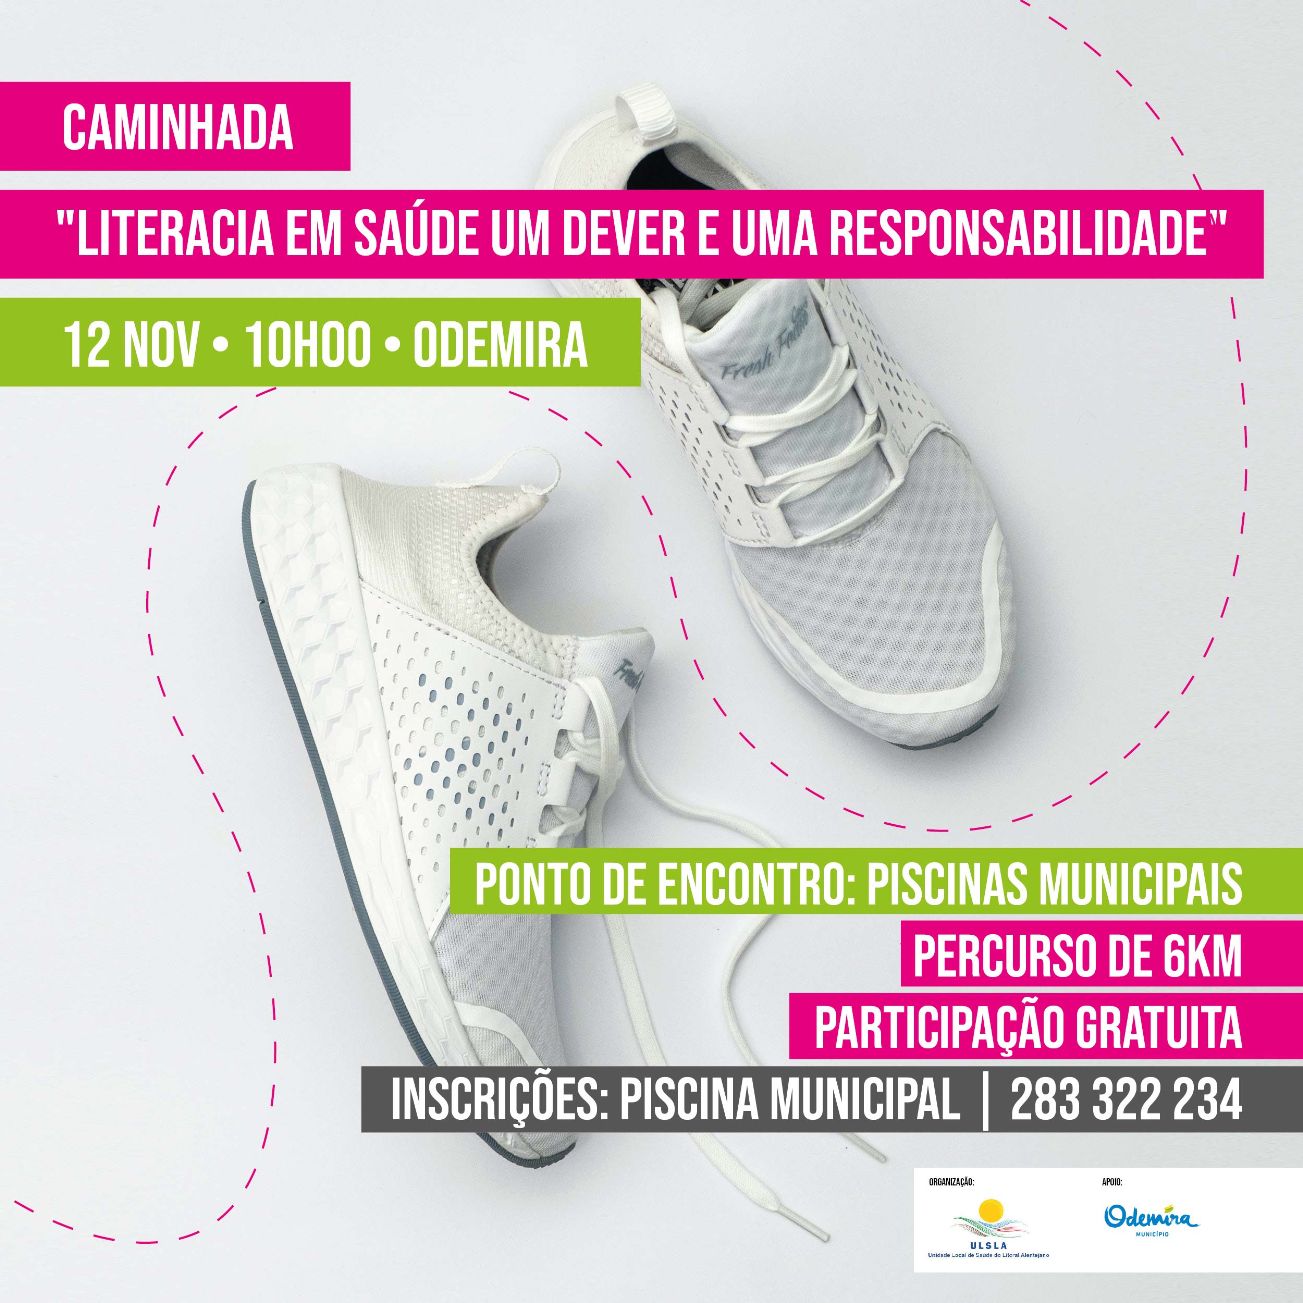 Caminhada "Literacia em saúde um dever e uma responsabilidade" irá realizar-se no dia 12 de Novembro em Odemira